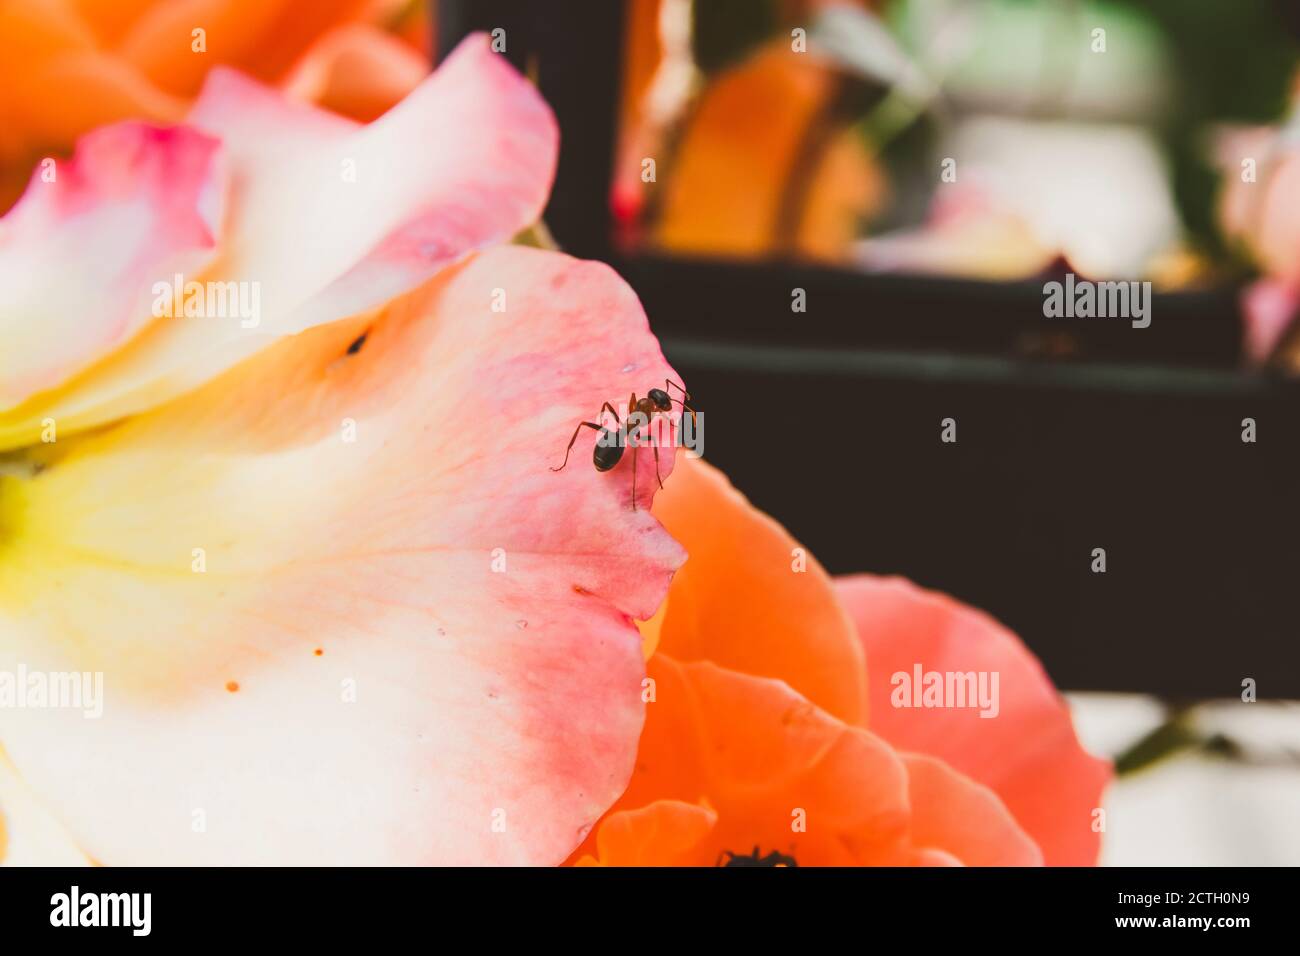 Una hormiga arrastrándose sobre una flor de color naranja-rosa Foto de stock